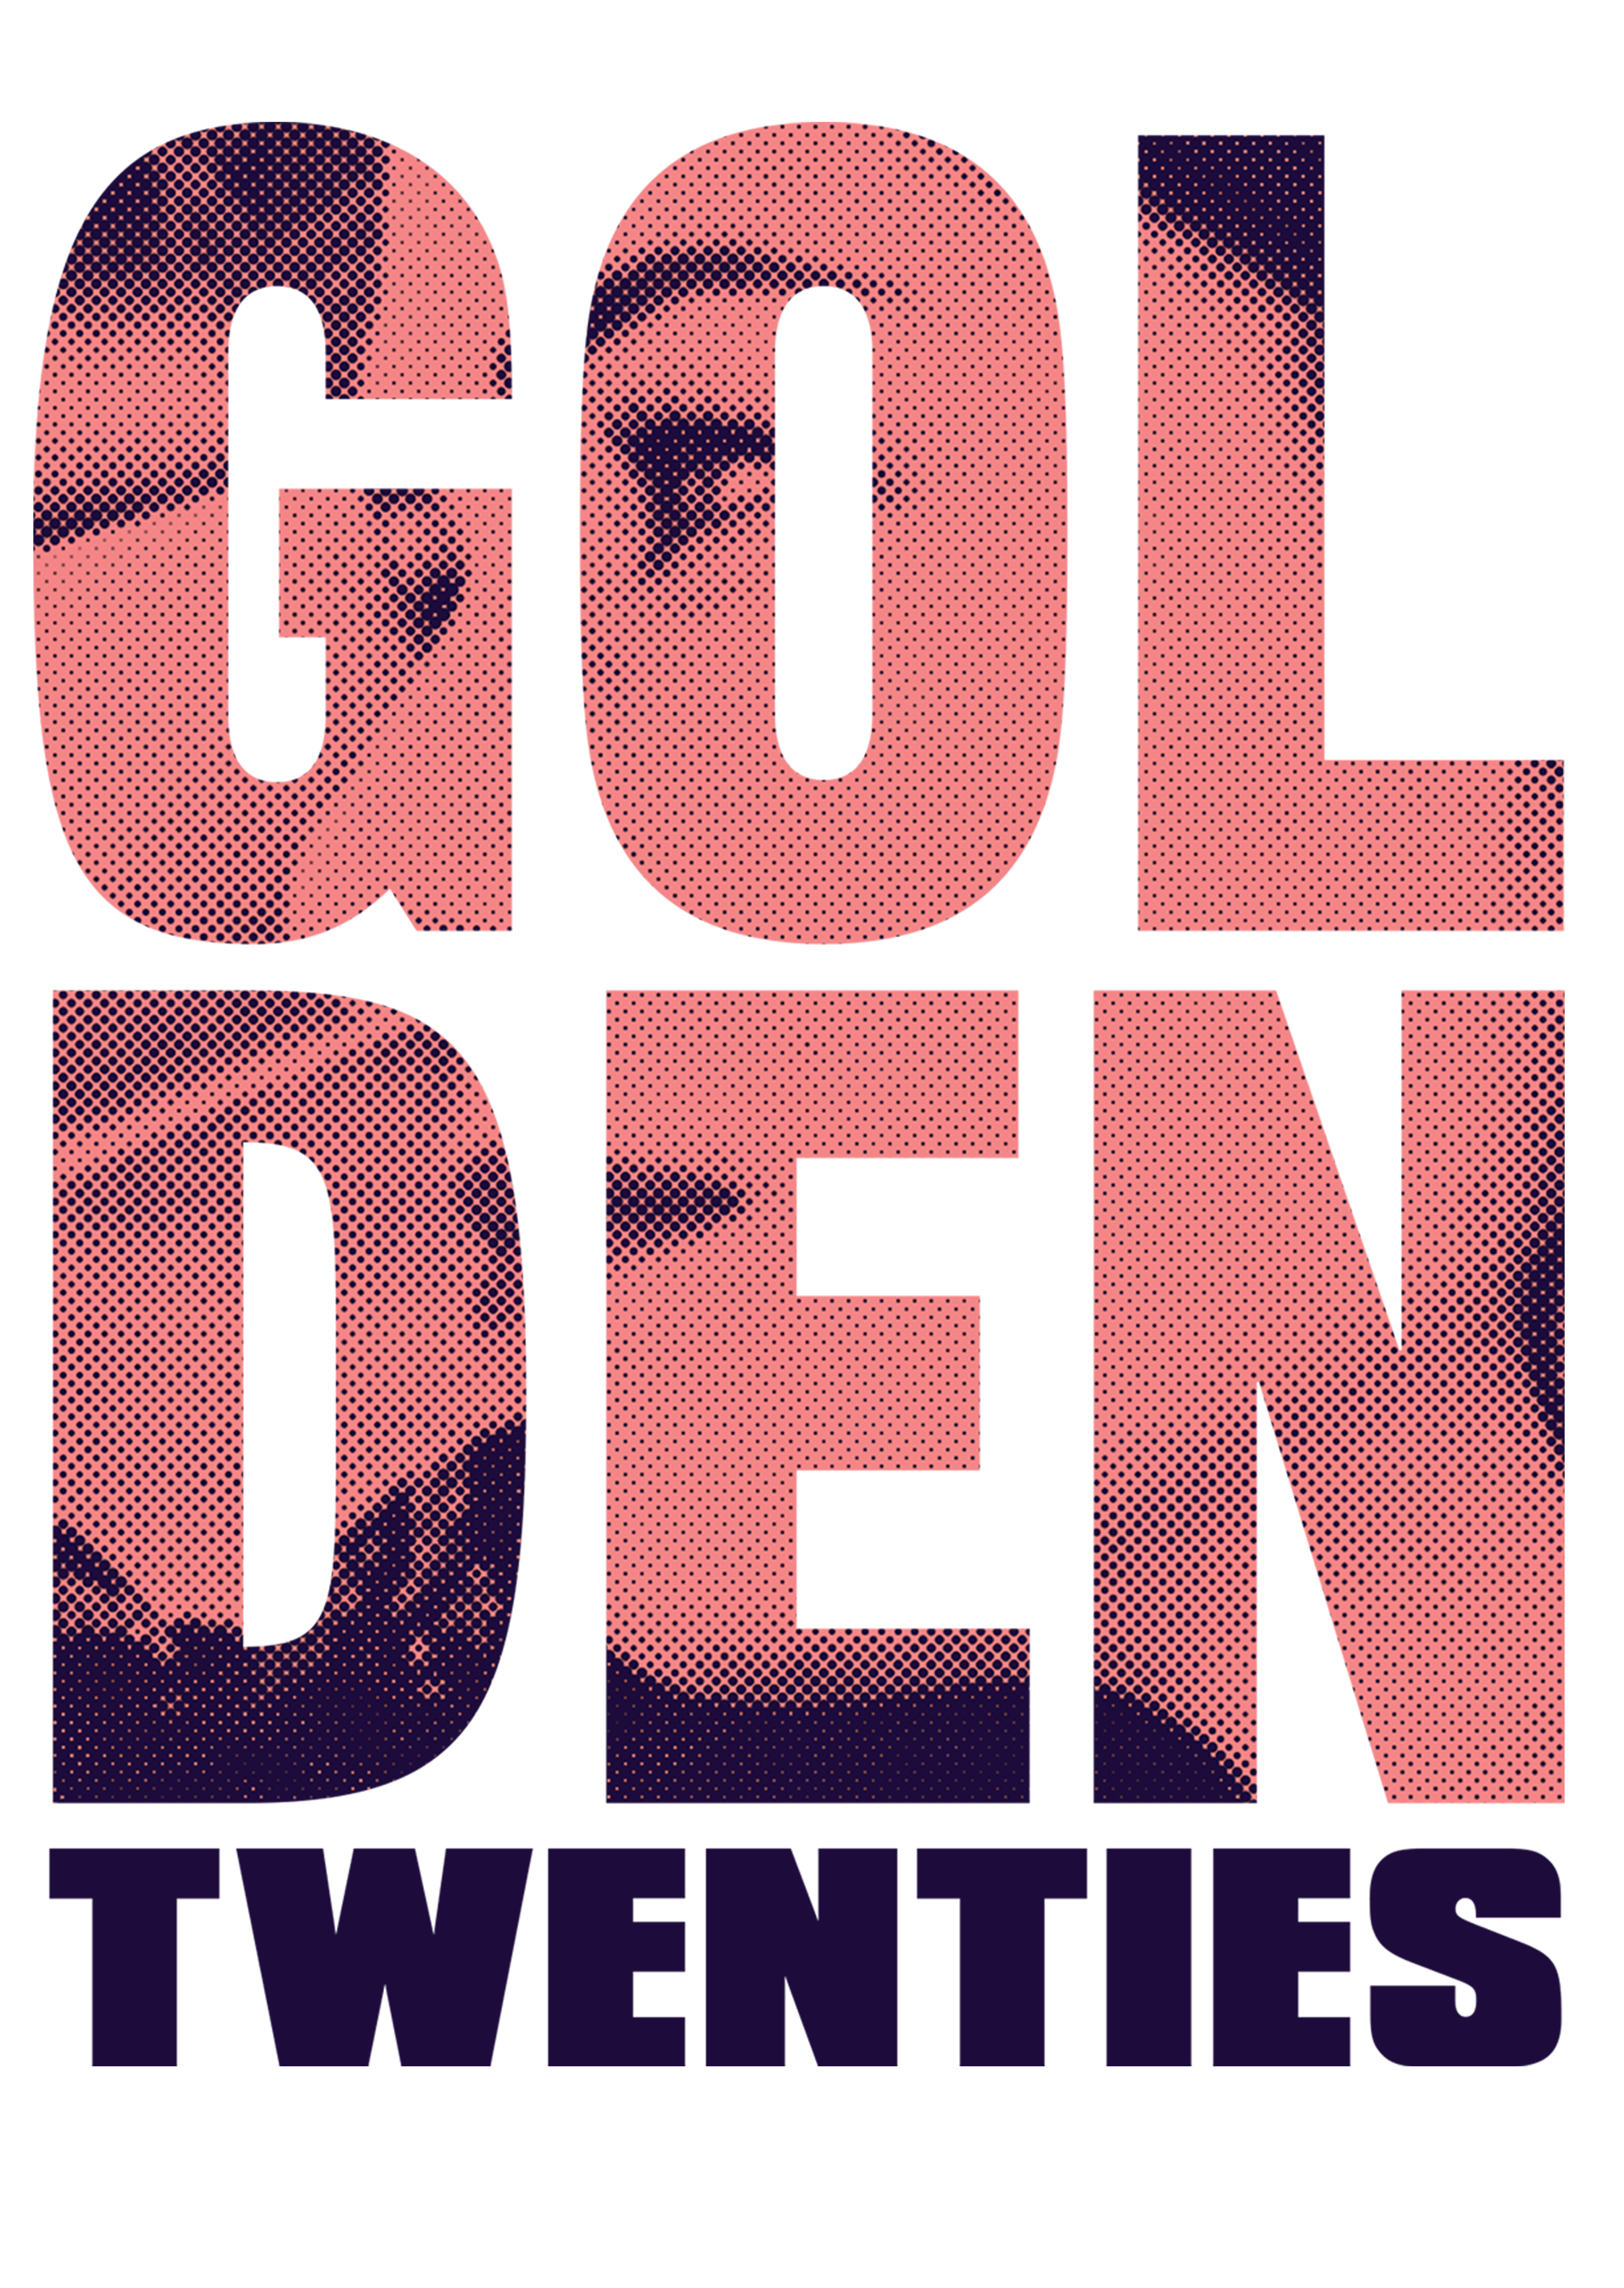 Golden Twenties 2019